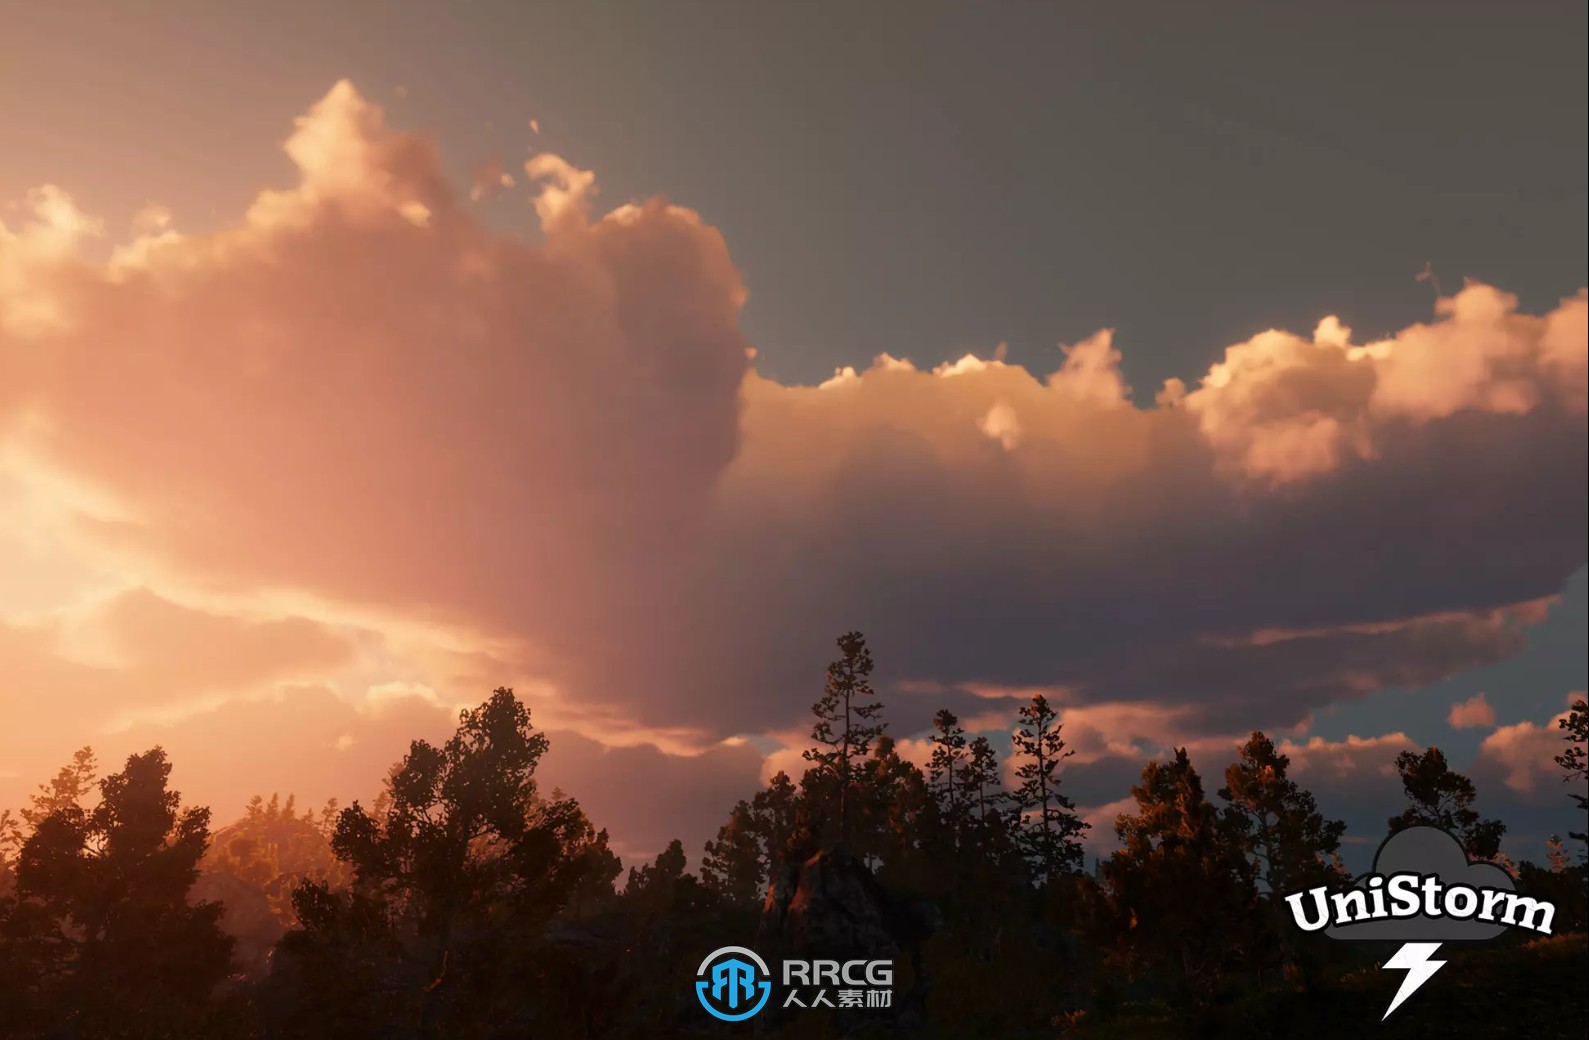 Unity游戏素材资源合集2023年8月第一季